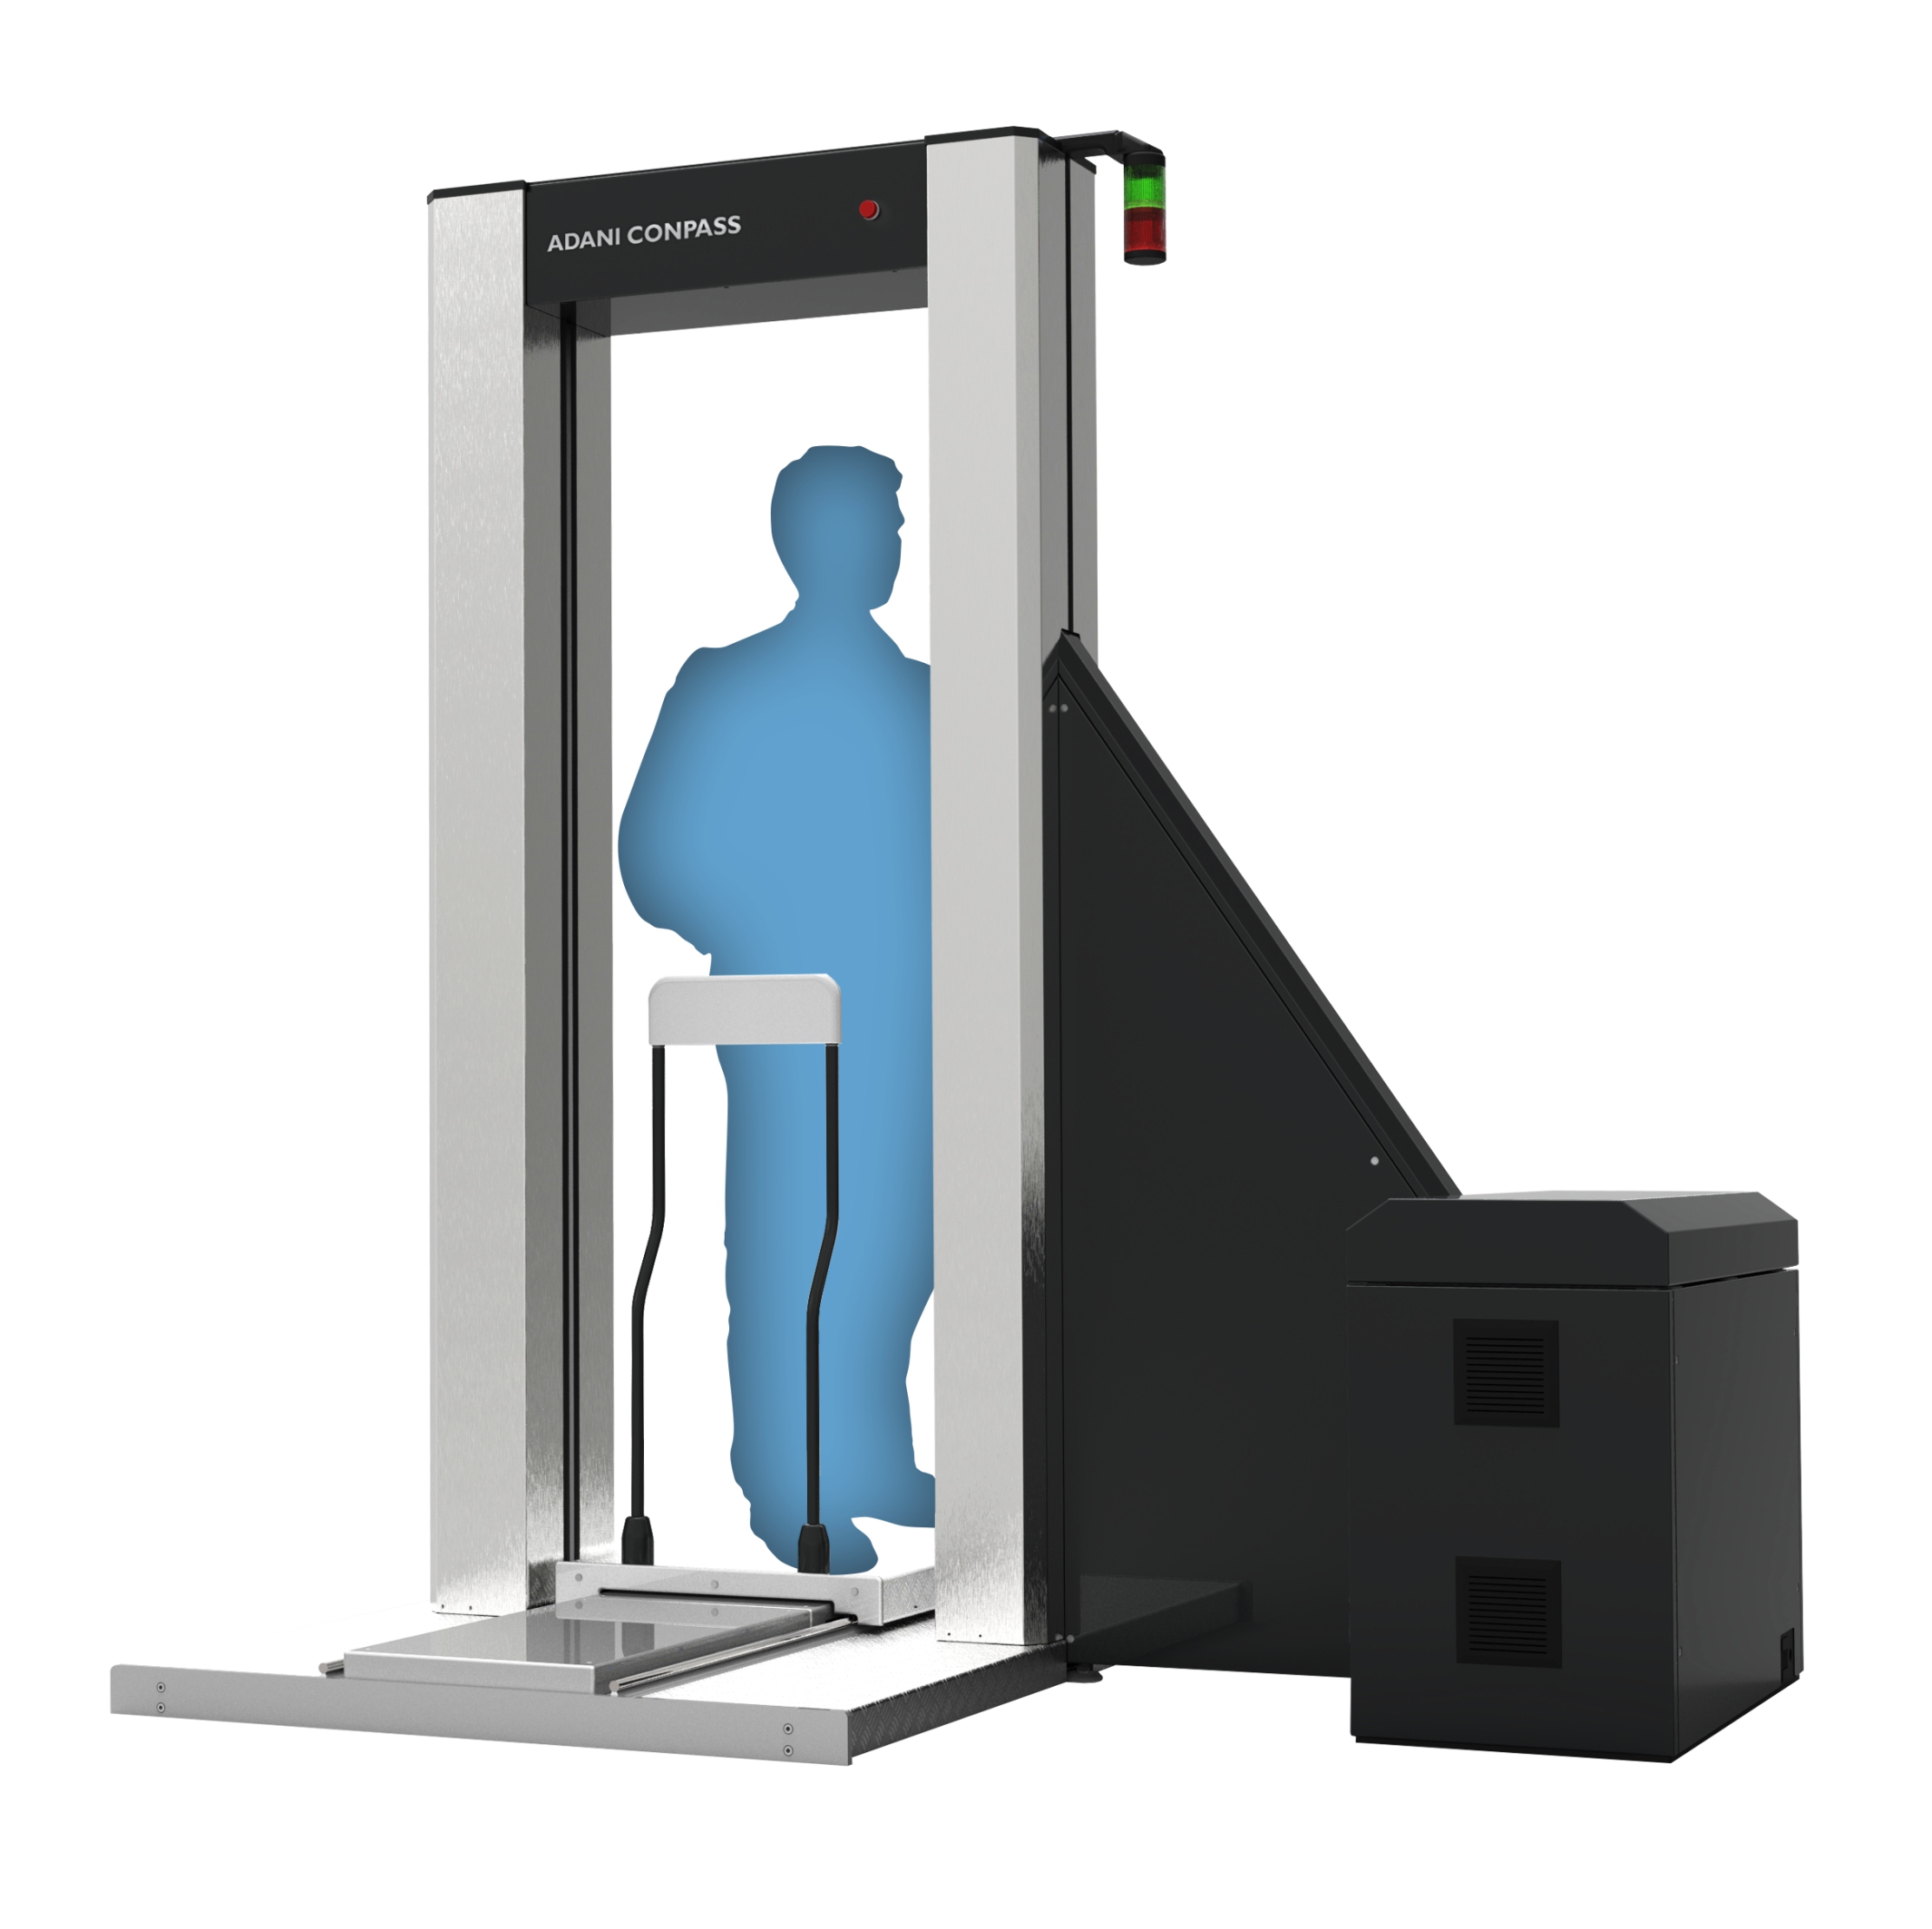 Досмотром установлено. Рентгеновская сканирующая система для персонального досмотра Consys. Рентгенотелевизионные интроскопы в аэропорту. КОНПАСС Адани. Сканер персонального досмотра КОНПАСС.